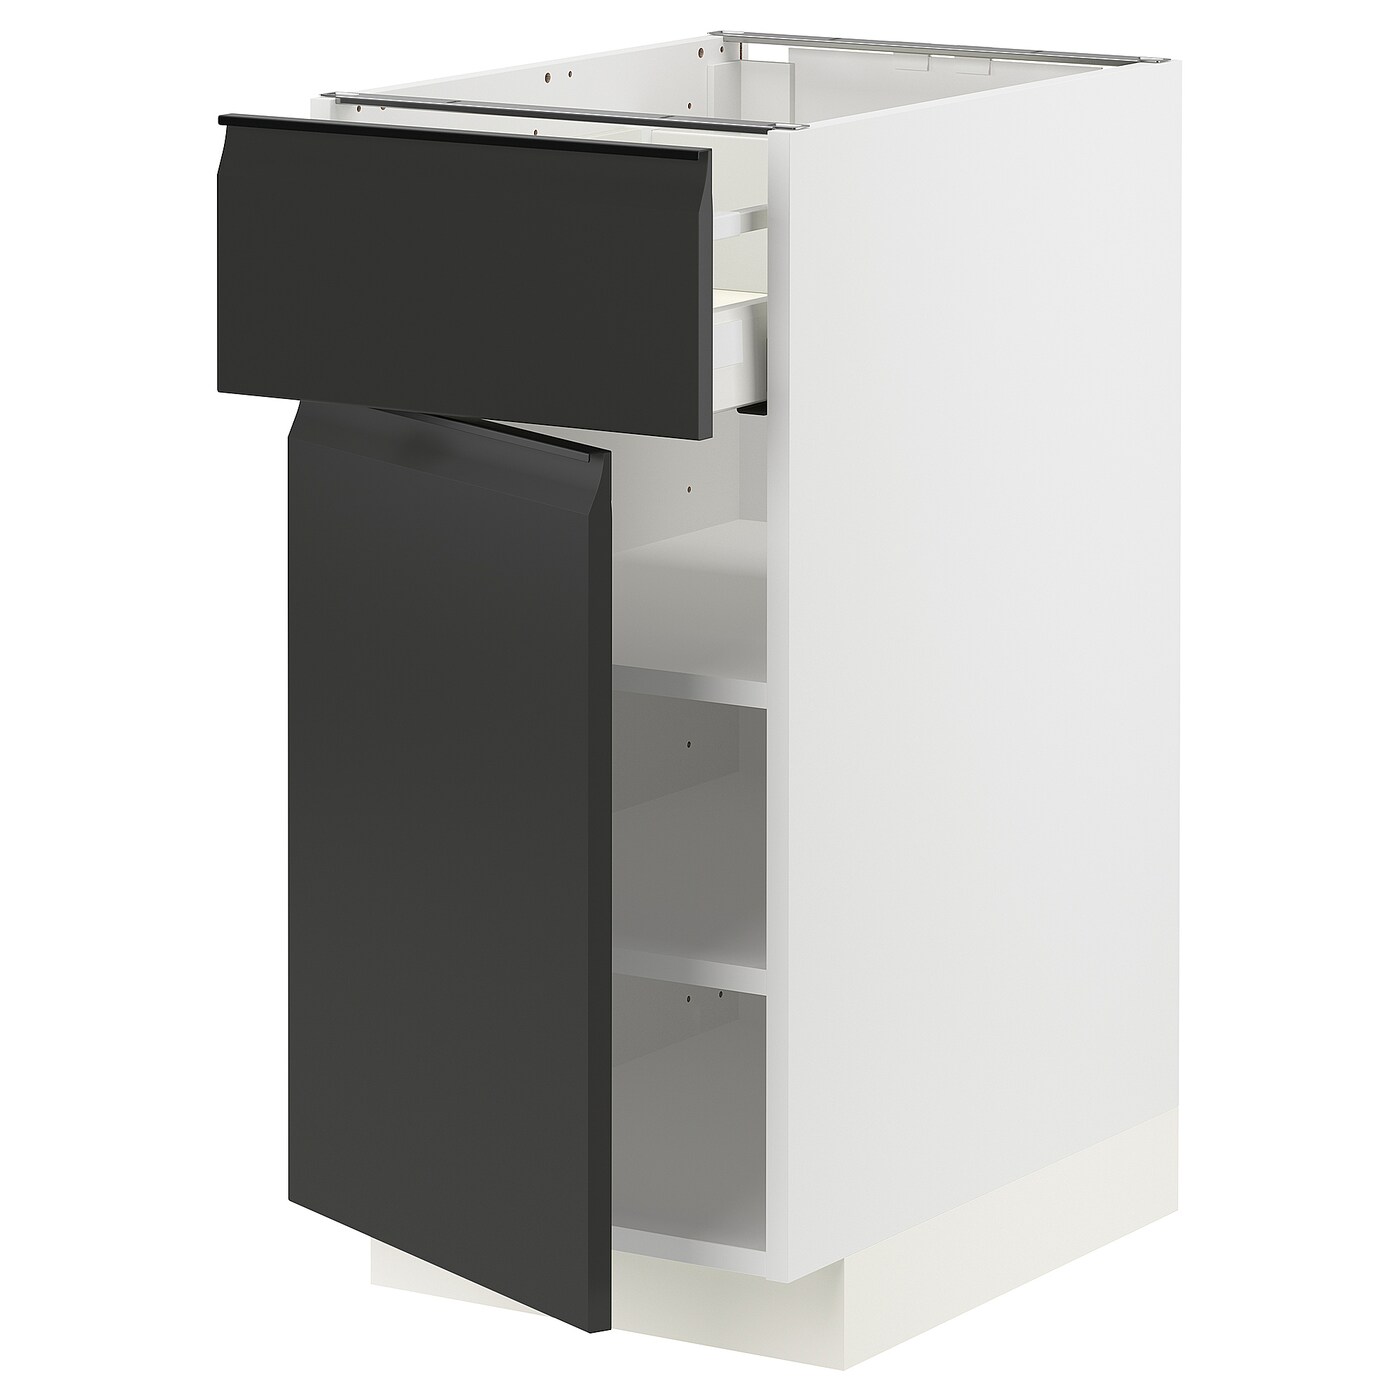 Напольный шкаф - IKEA METOD MAXIMERA, 88x62x40см, белый/черный, МЕТОД МАКСИМЕРА ИКЕА